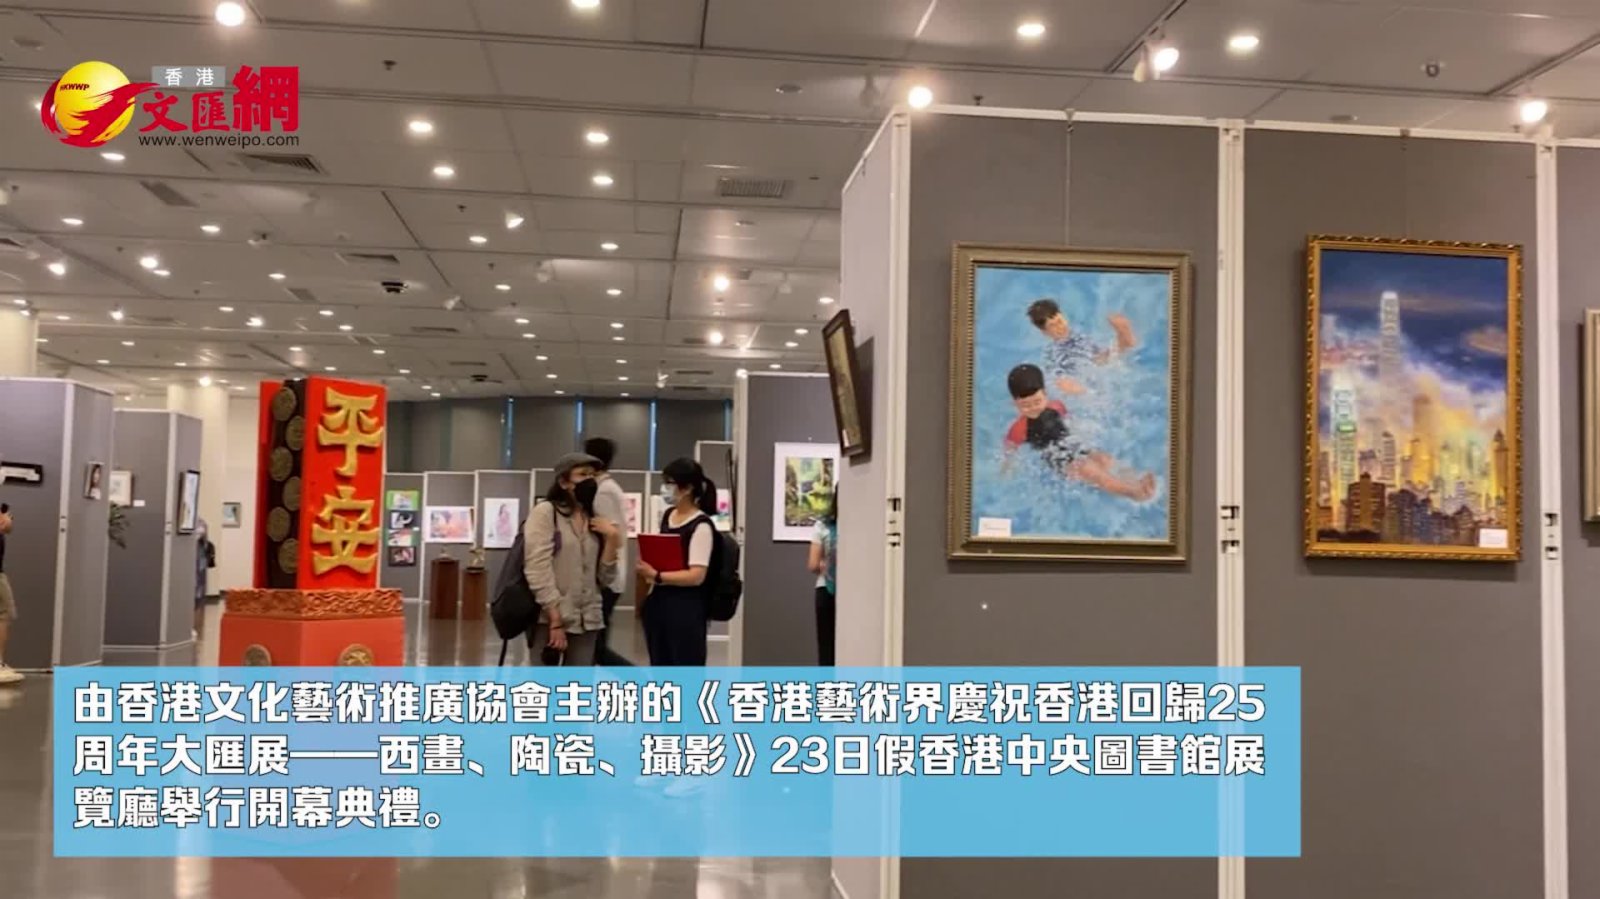 香港藝術界辦大匯展慶回歸　展出西畫陶瓷攝影等近800件作品